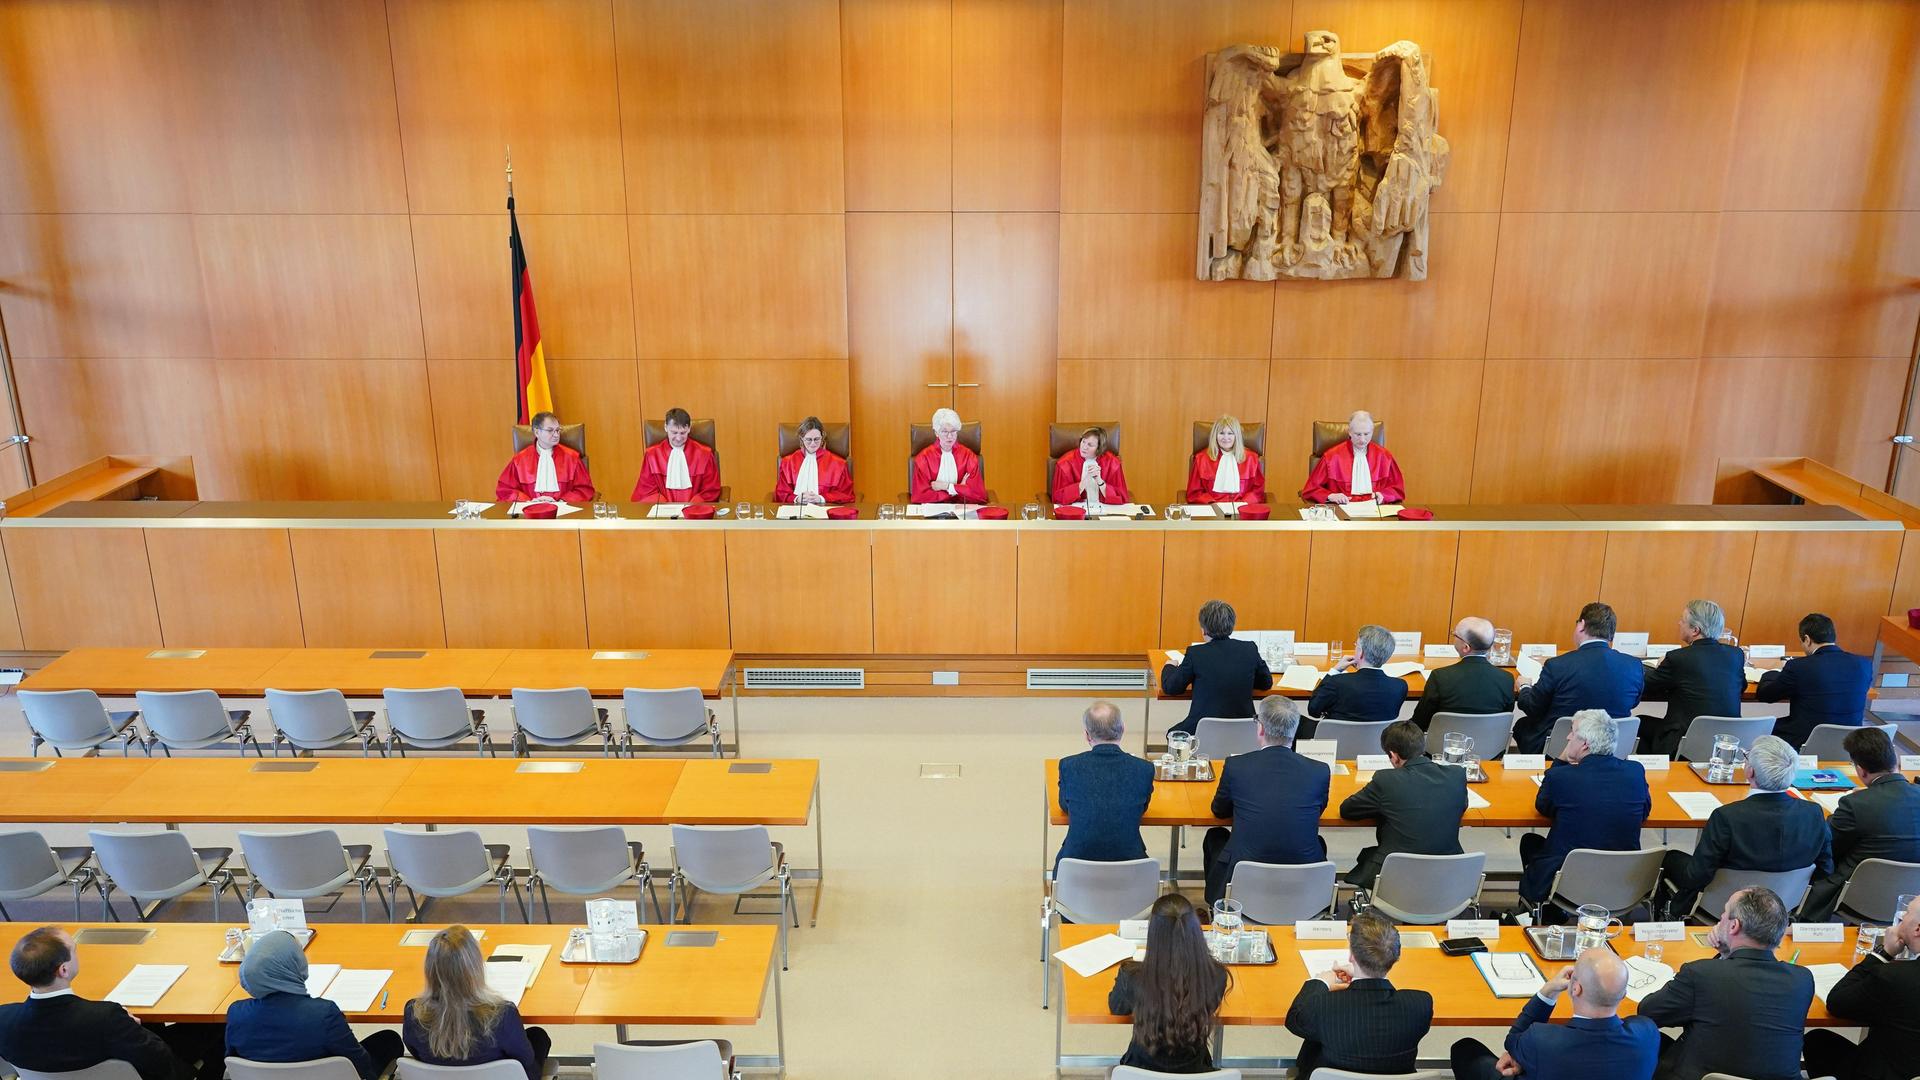 Der Zweite Senat von dem Bundes-Verfassungs-Gericht im Verhandlungs-Saal.